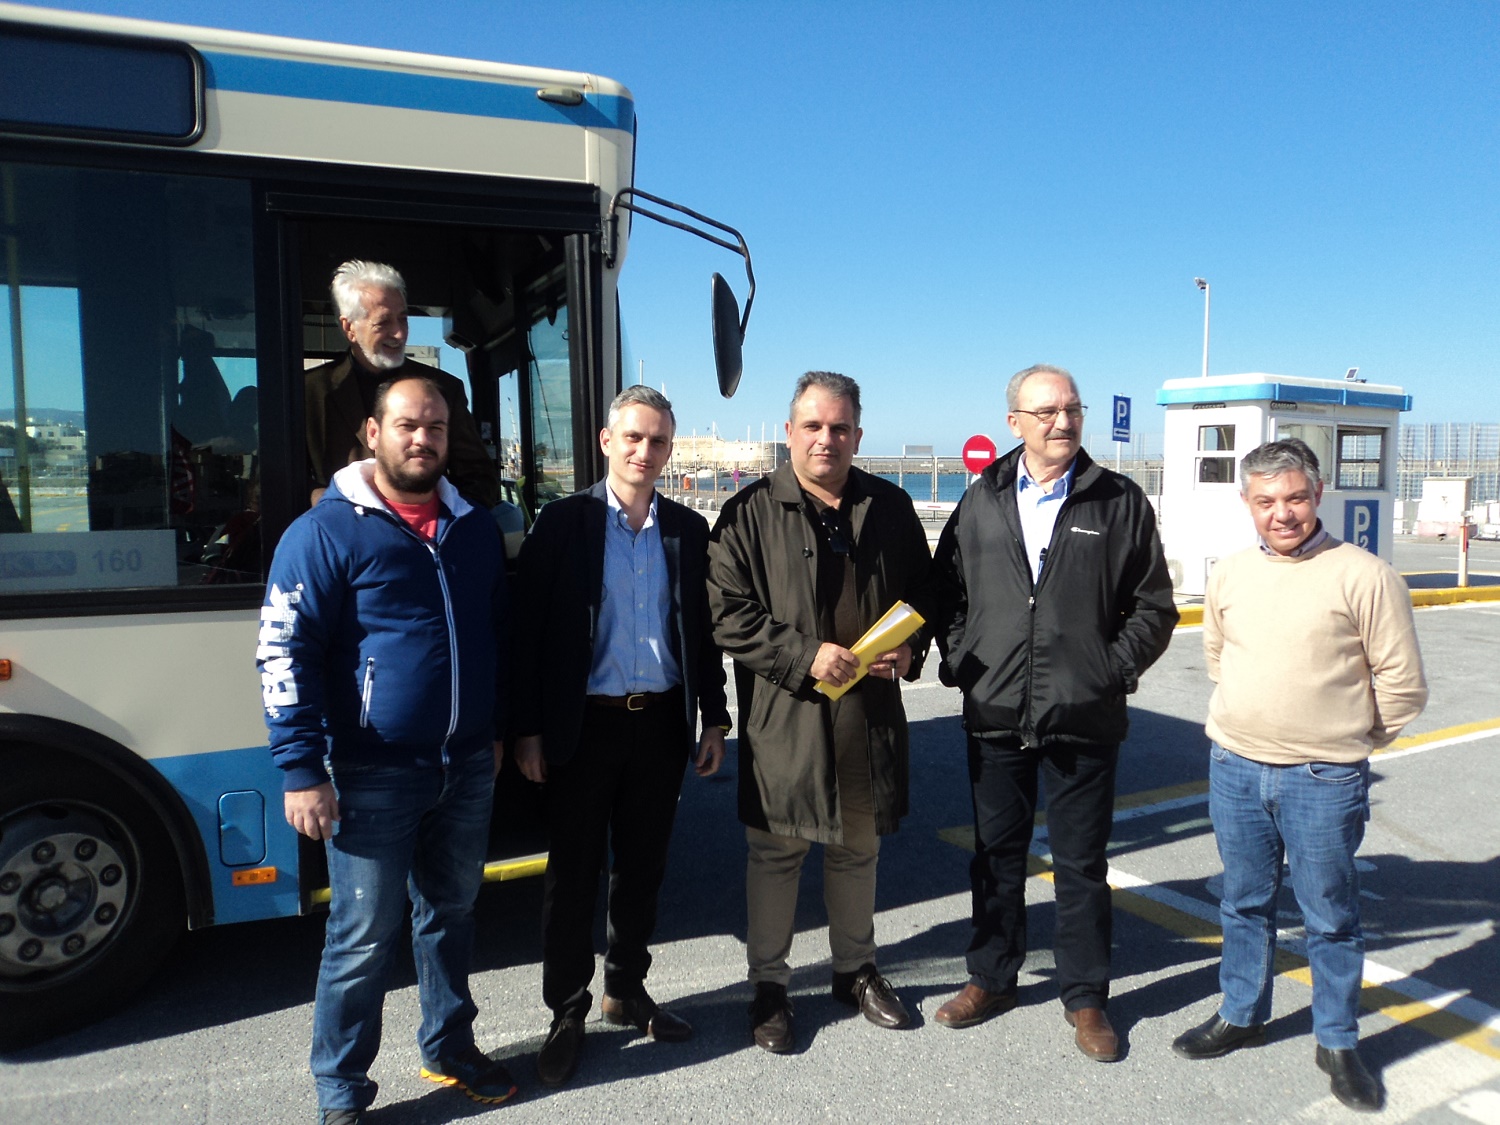 Διαδρομές για mini bus εντός των τειχών δοκιμάστηκαν σήμερα στο Ηράκλειο